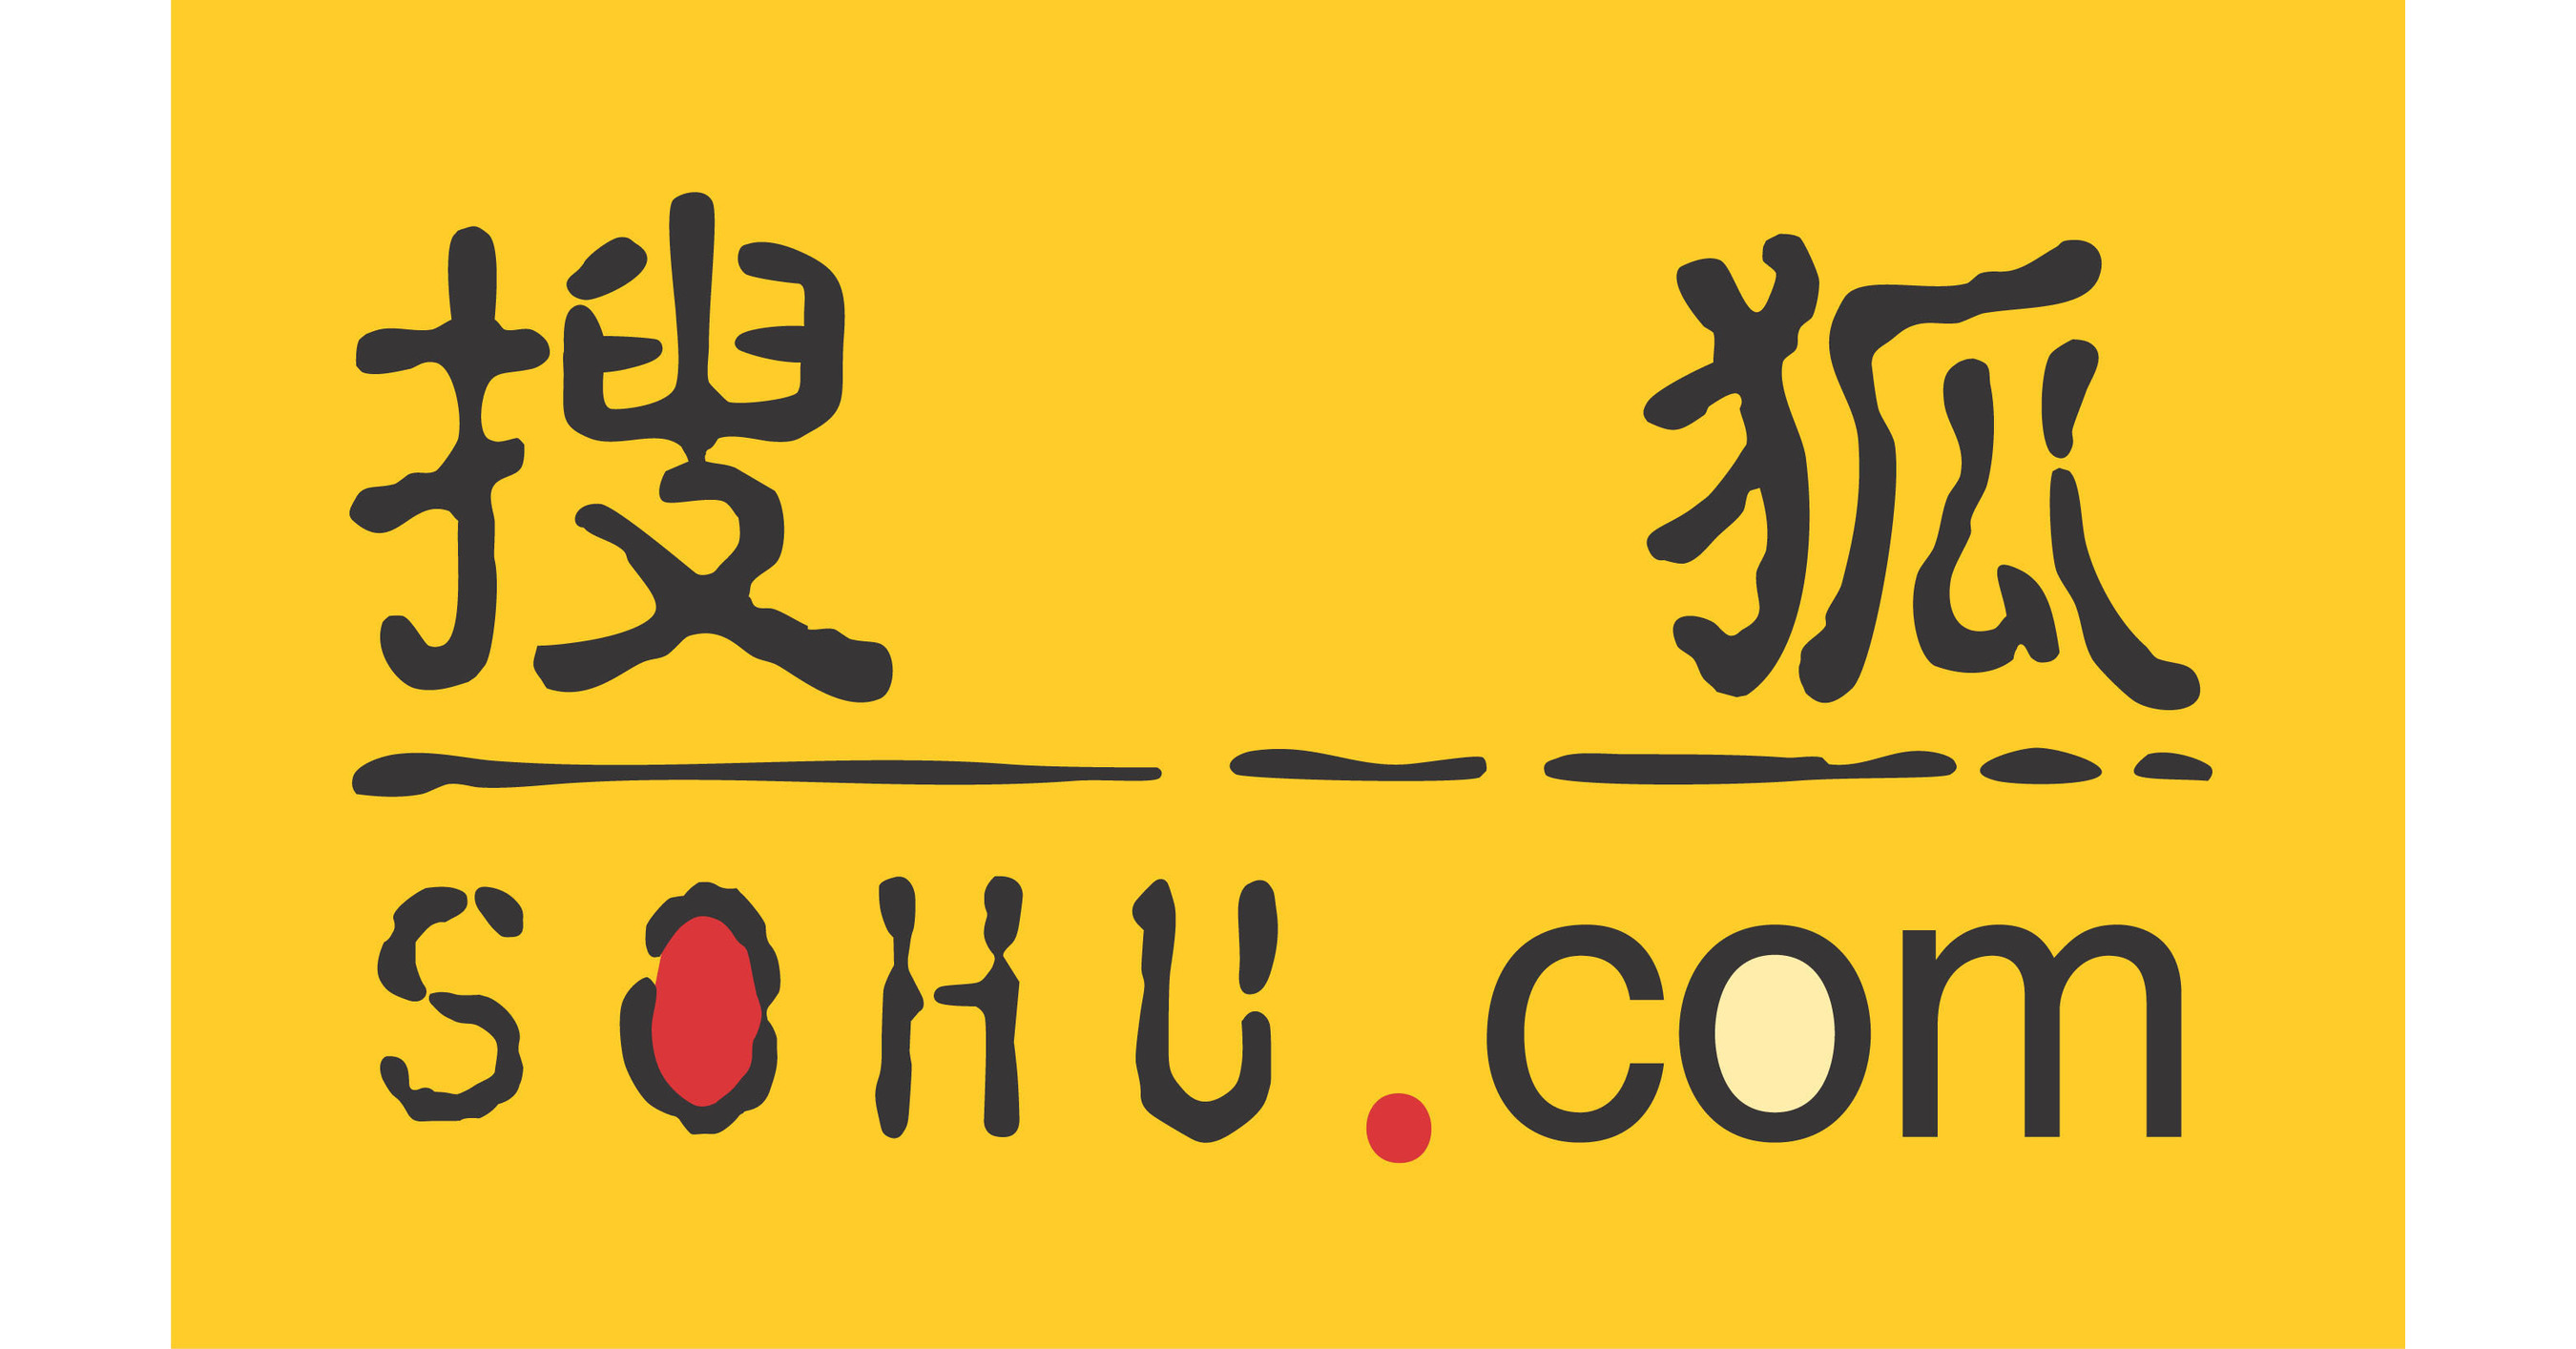 Sohu.com maakt op 16 mei 2022 haar financiële resultaten voor het eerste kwartaal van 2022 bekend